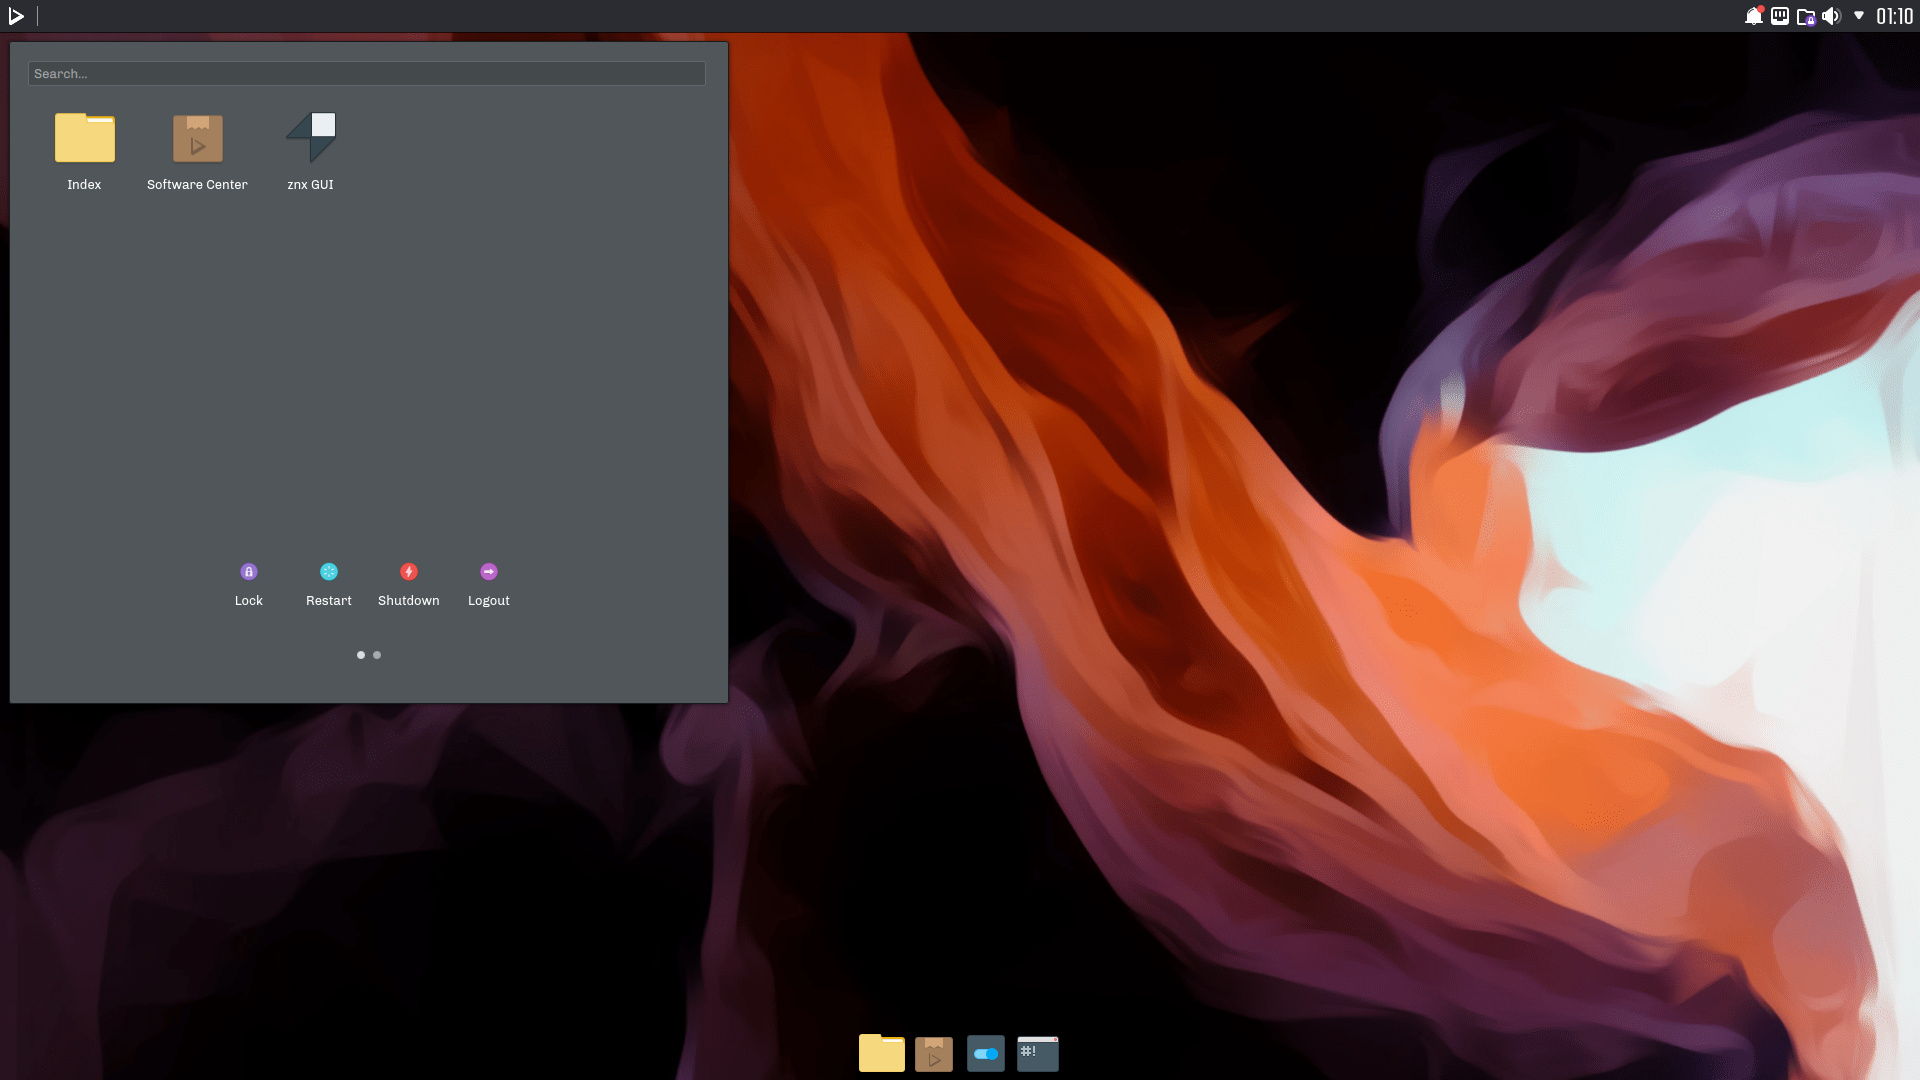 Der NX Desktop von Nitrux 2020.02.28 auf Basis von KDE Plasma 5